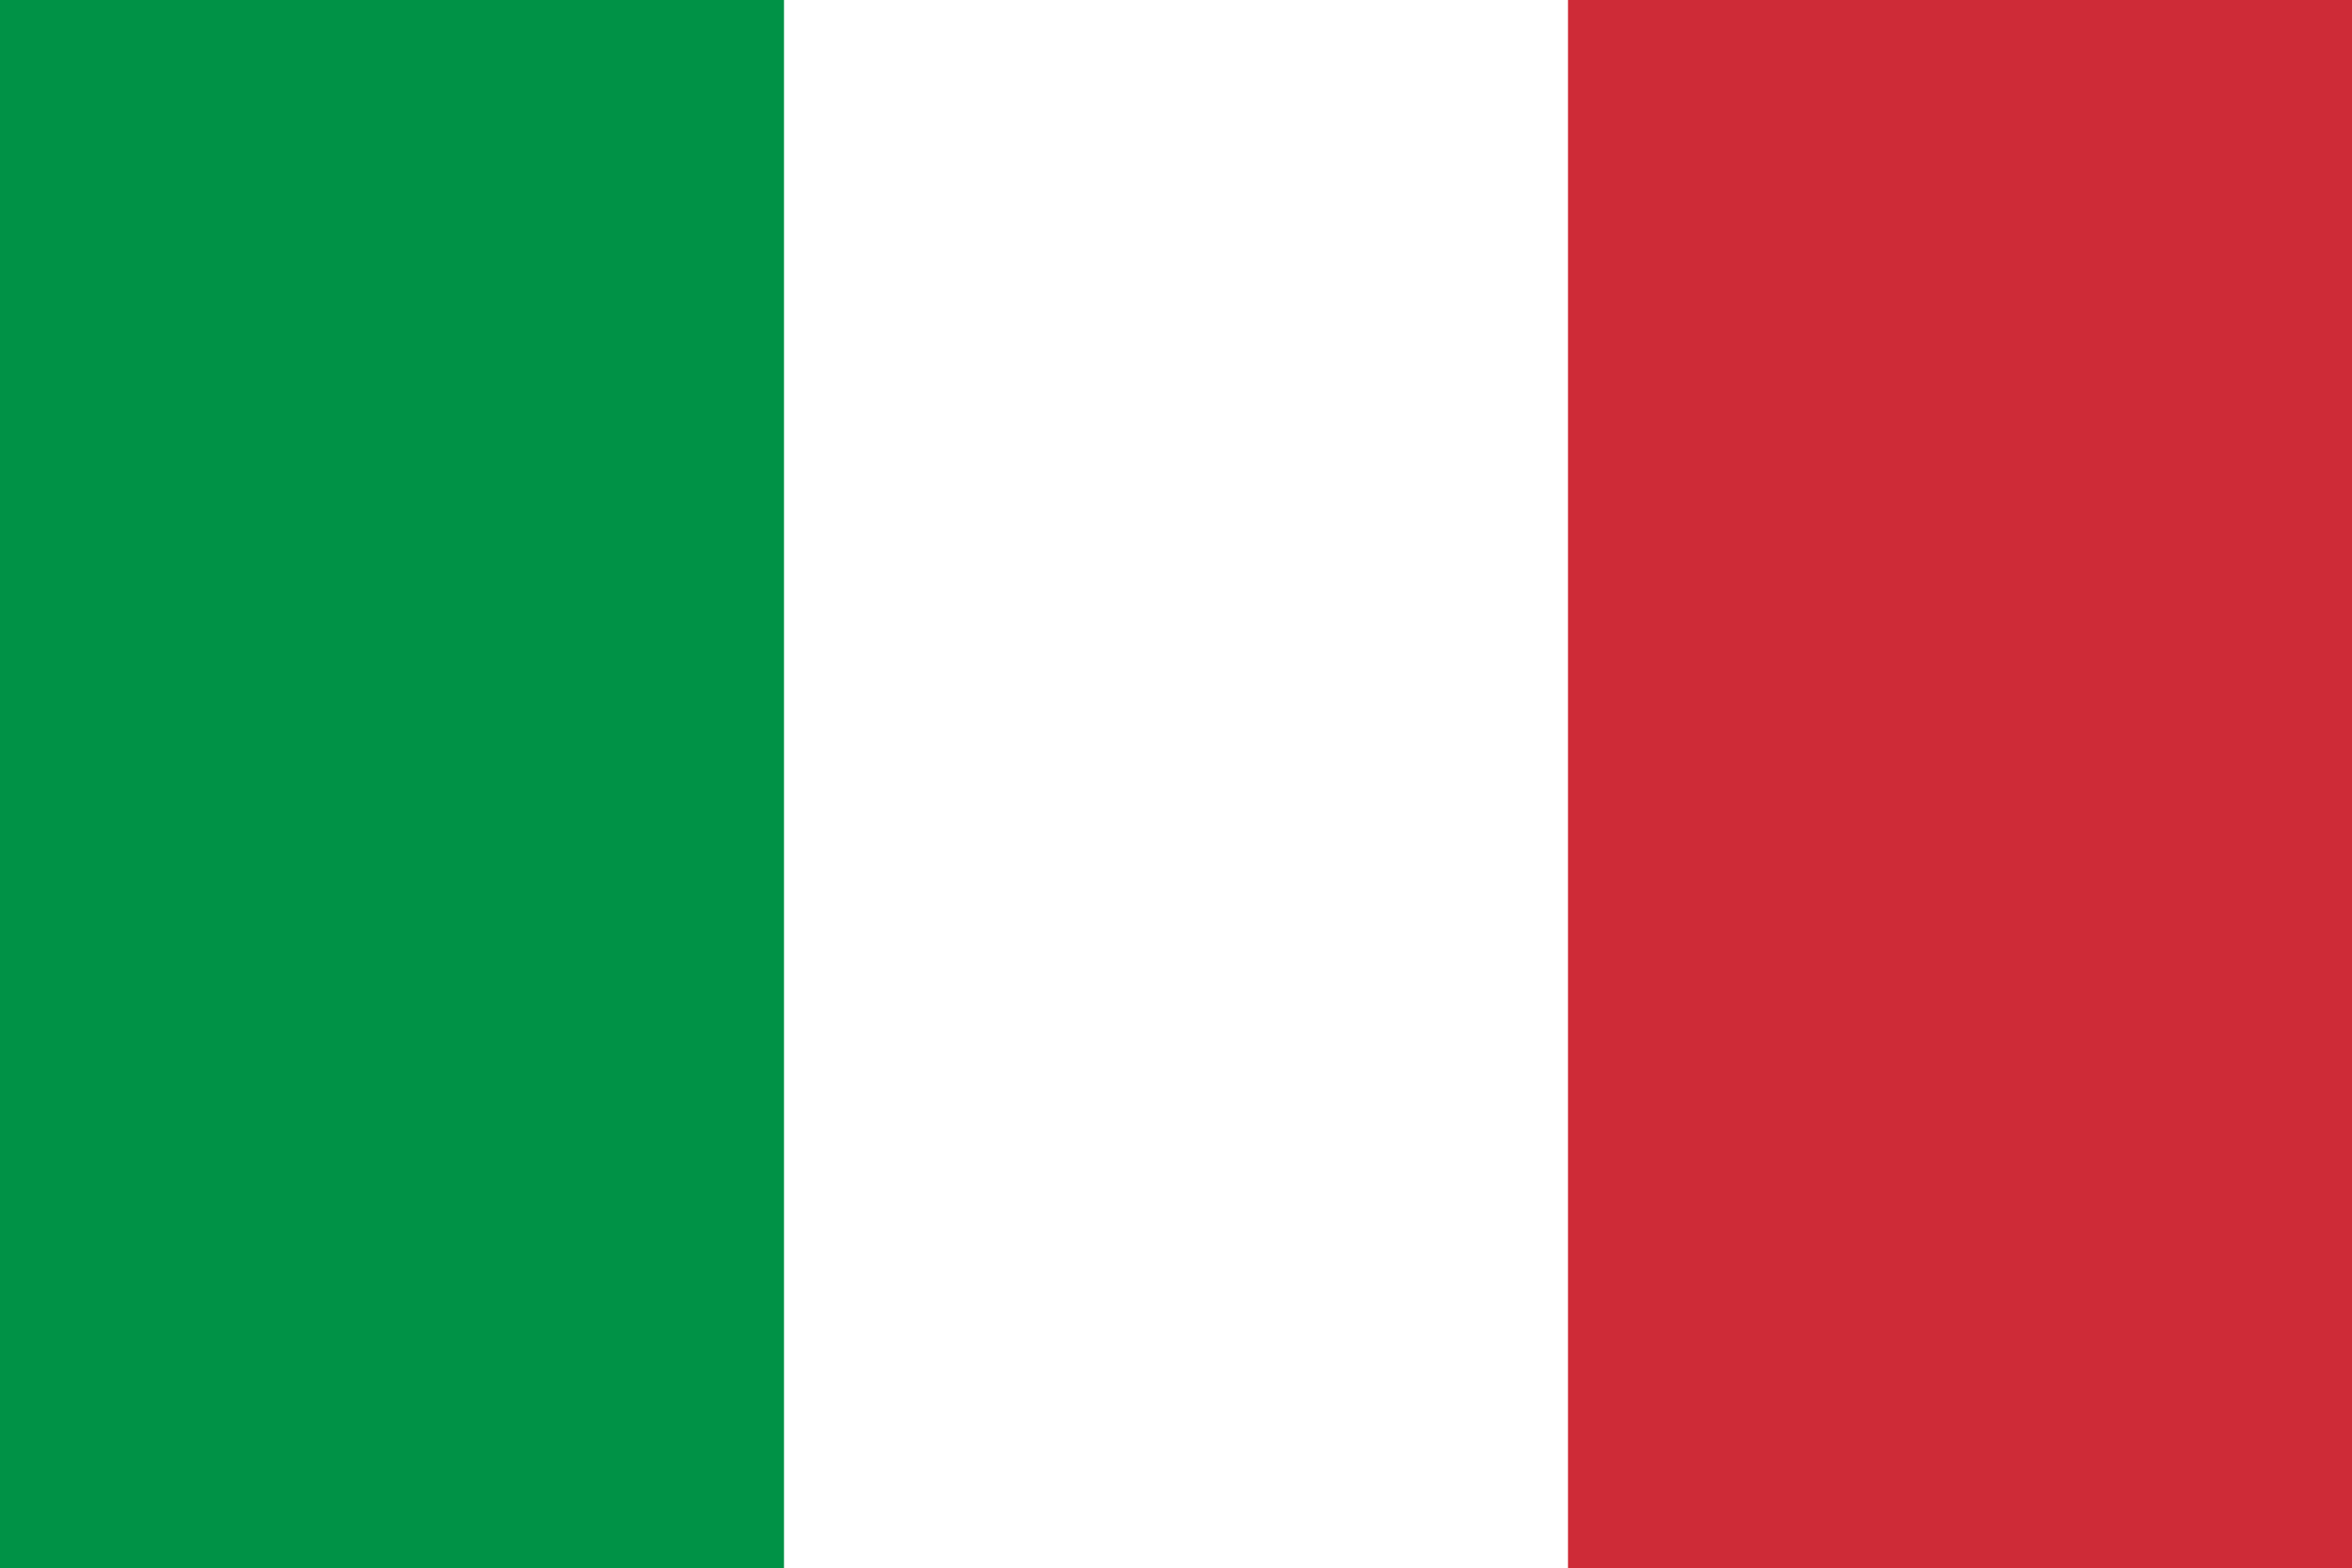 Σημαία της Ιταλίας